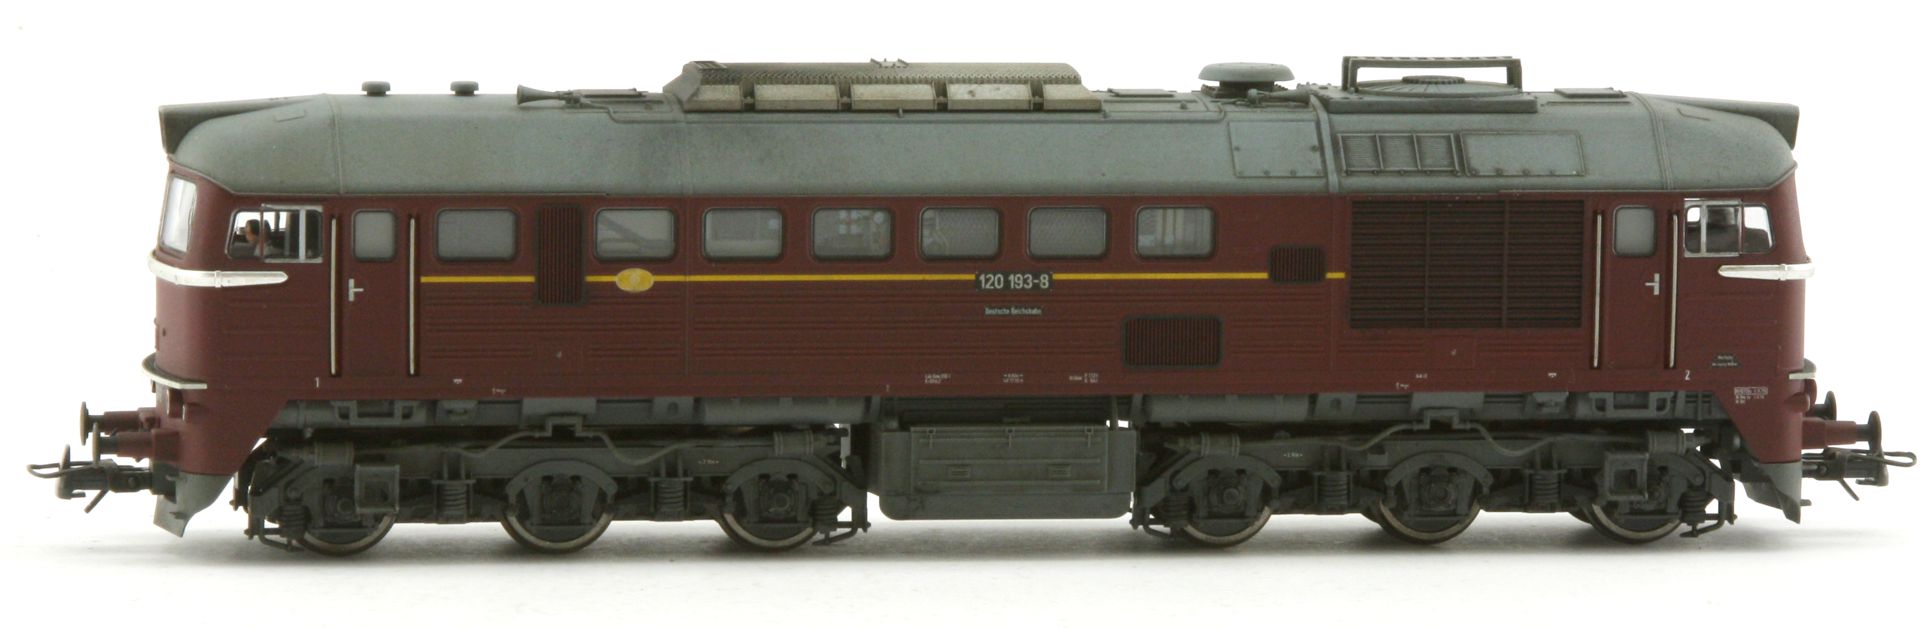 Saxonia 87061 - Diesellok 120 193-8, DR, Ep.IV, AC-Sound, leichte Alterung